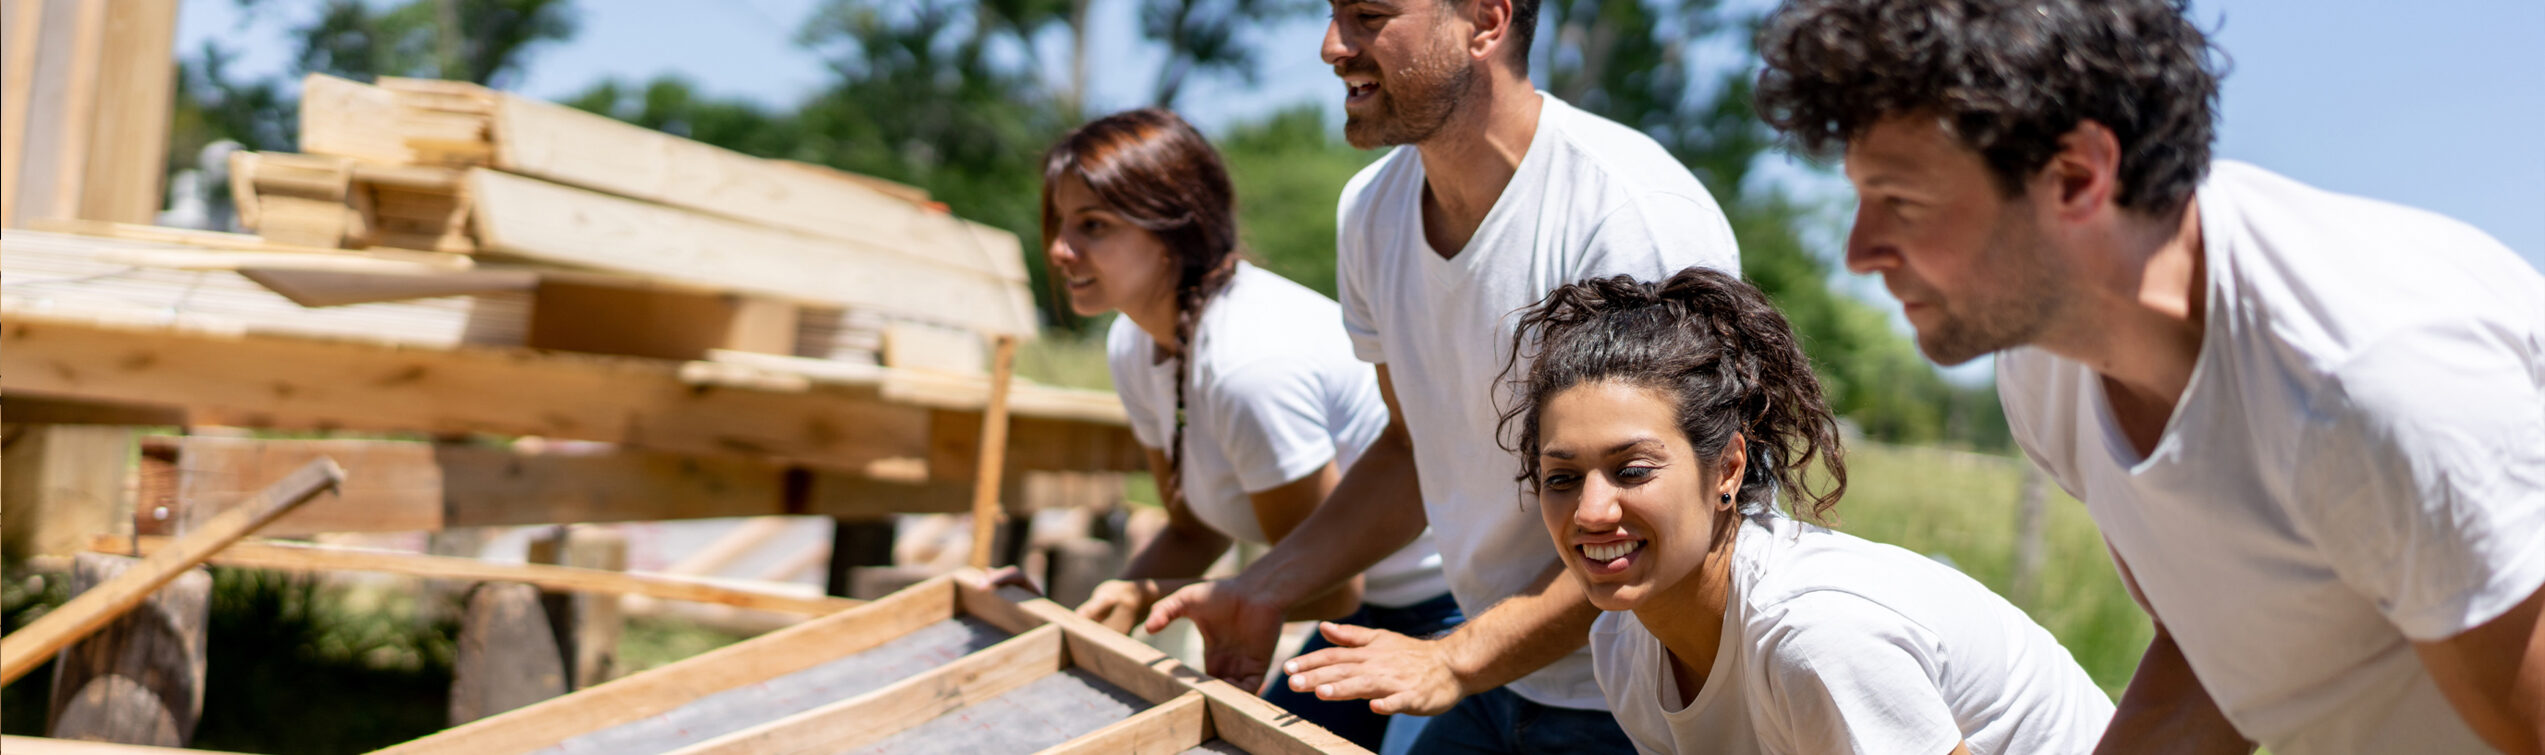 People volunteering to build homes in their community.